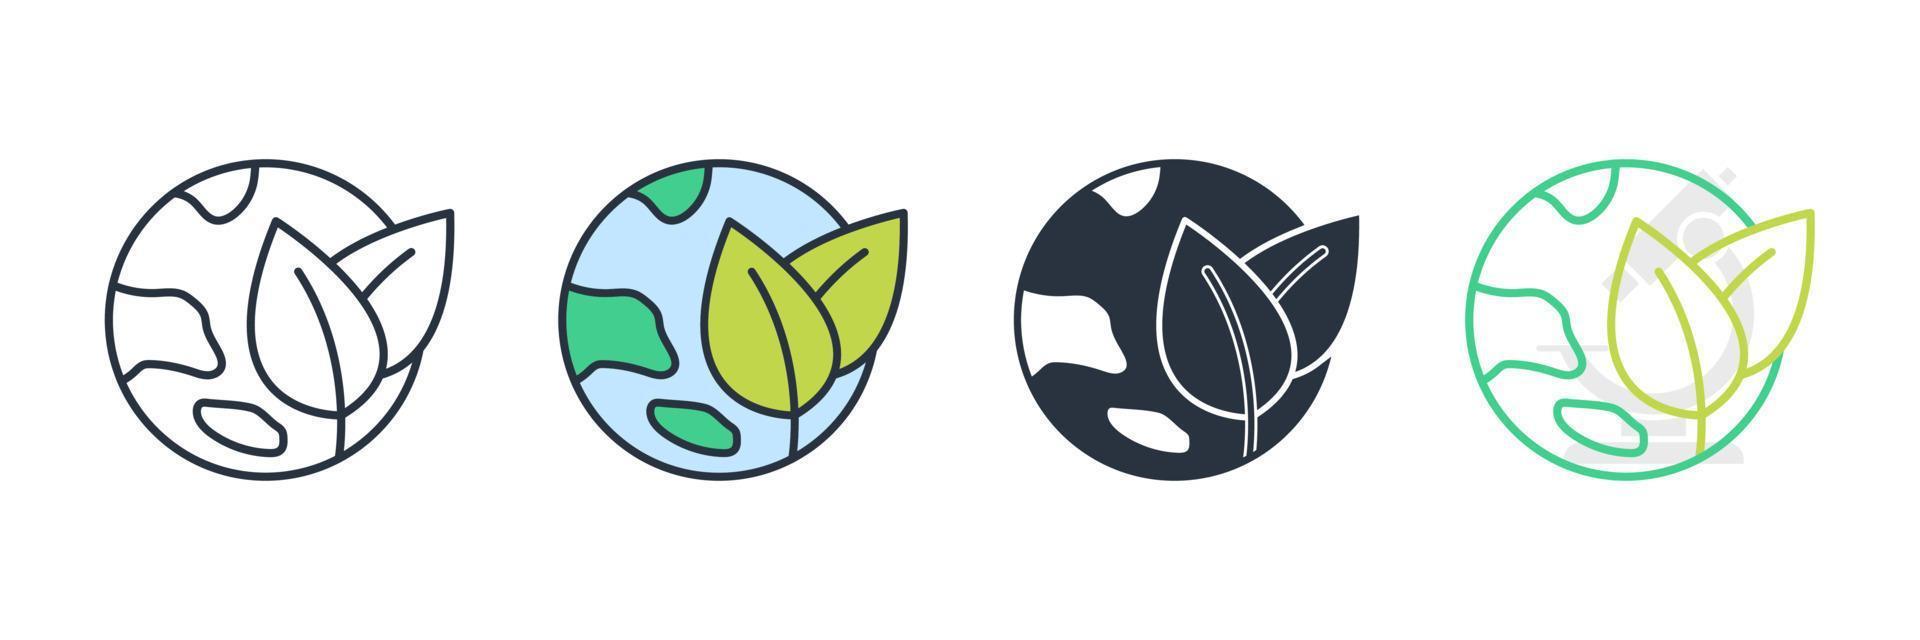 groene aarde pictogram logo vectorillustratie. ecologie, natuur wereldwijd beschermen symboolsjabloon voor grafische en webdesign collectie vector